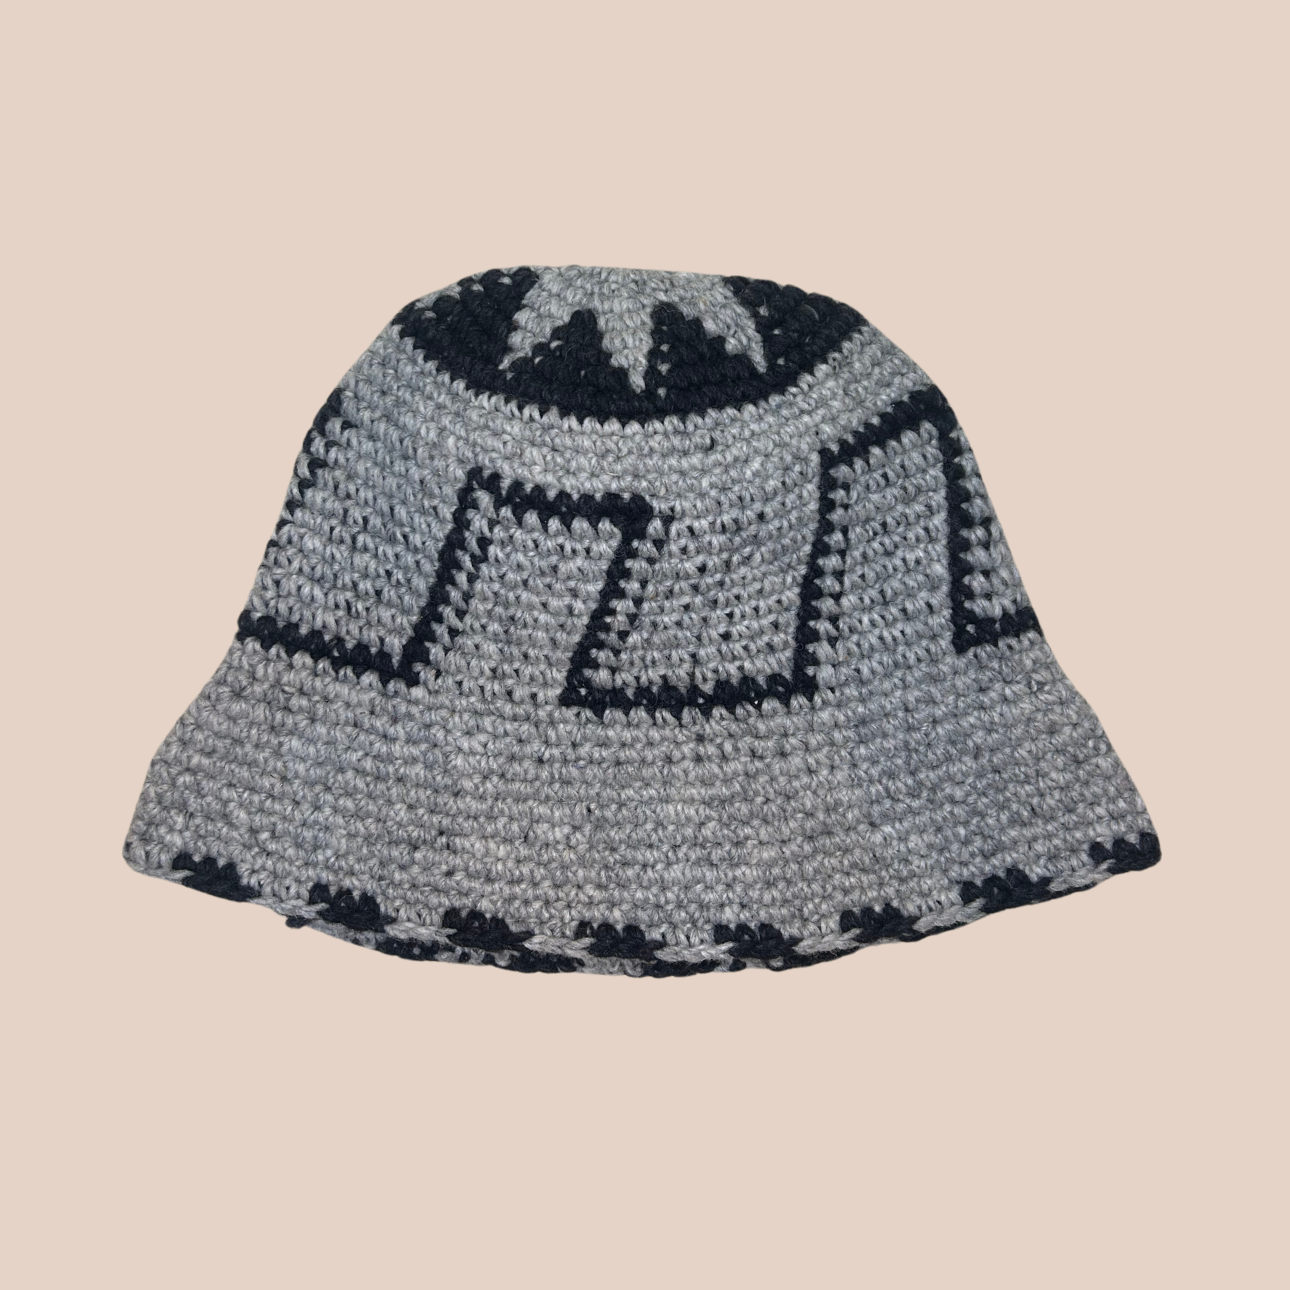 Un bucket hat crocheté en laine et acrylique, aux motifs noir et blanc